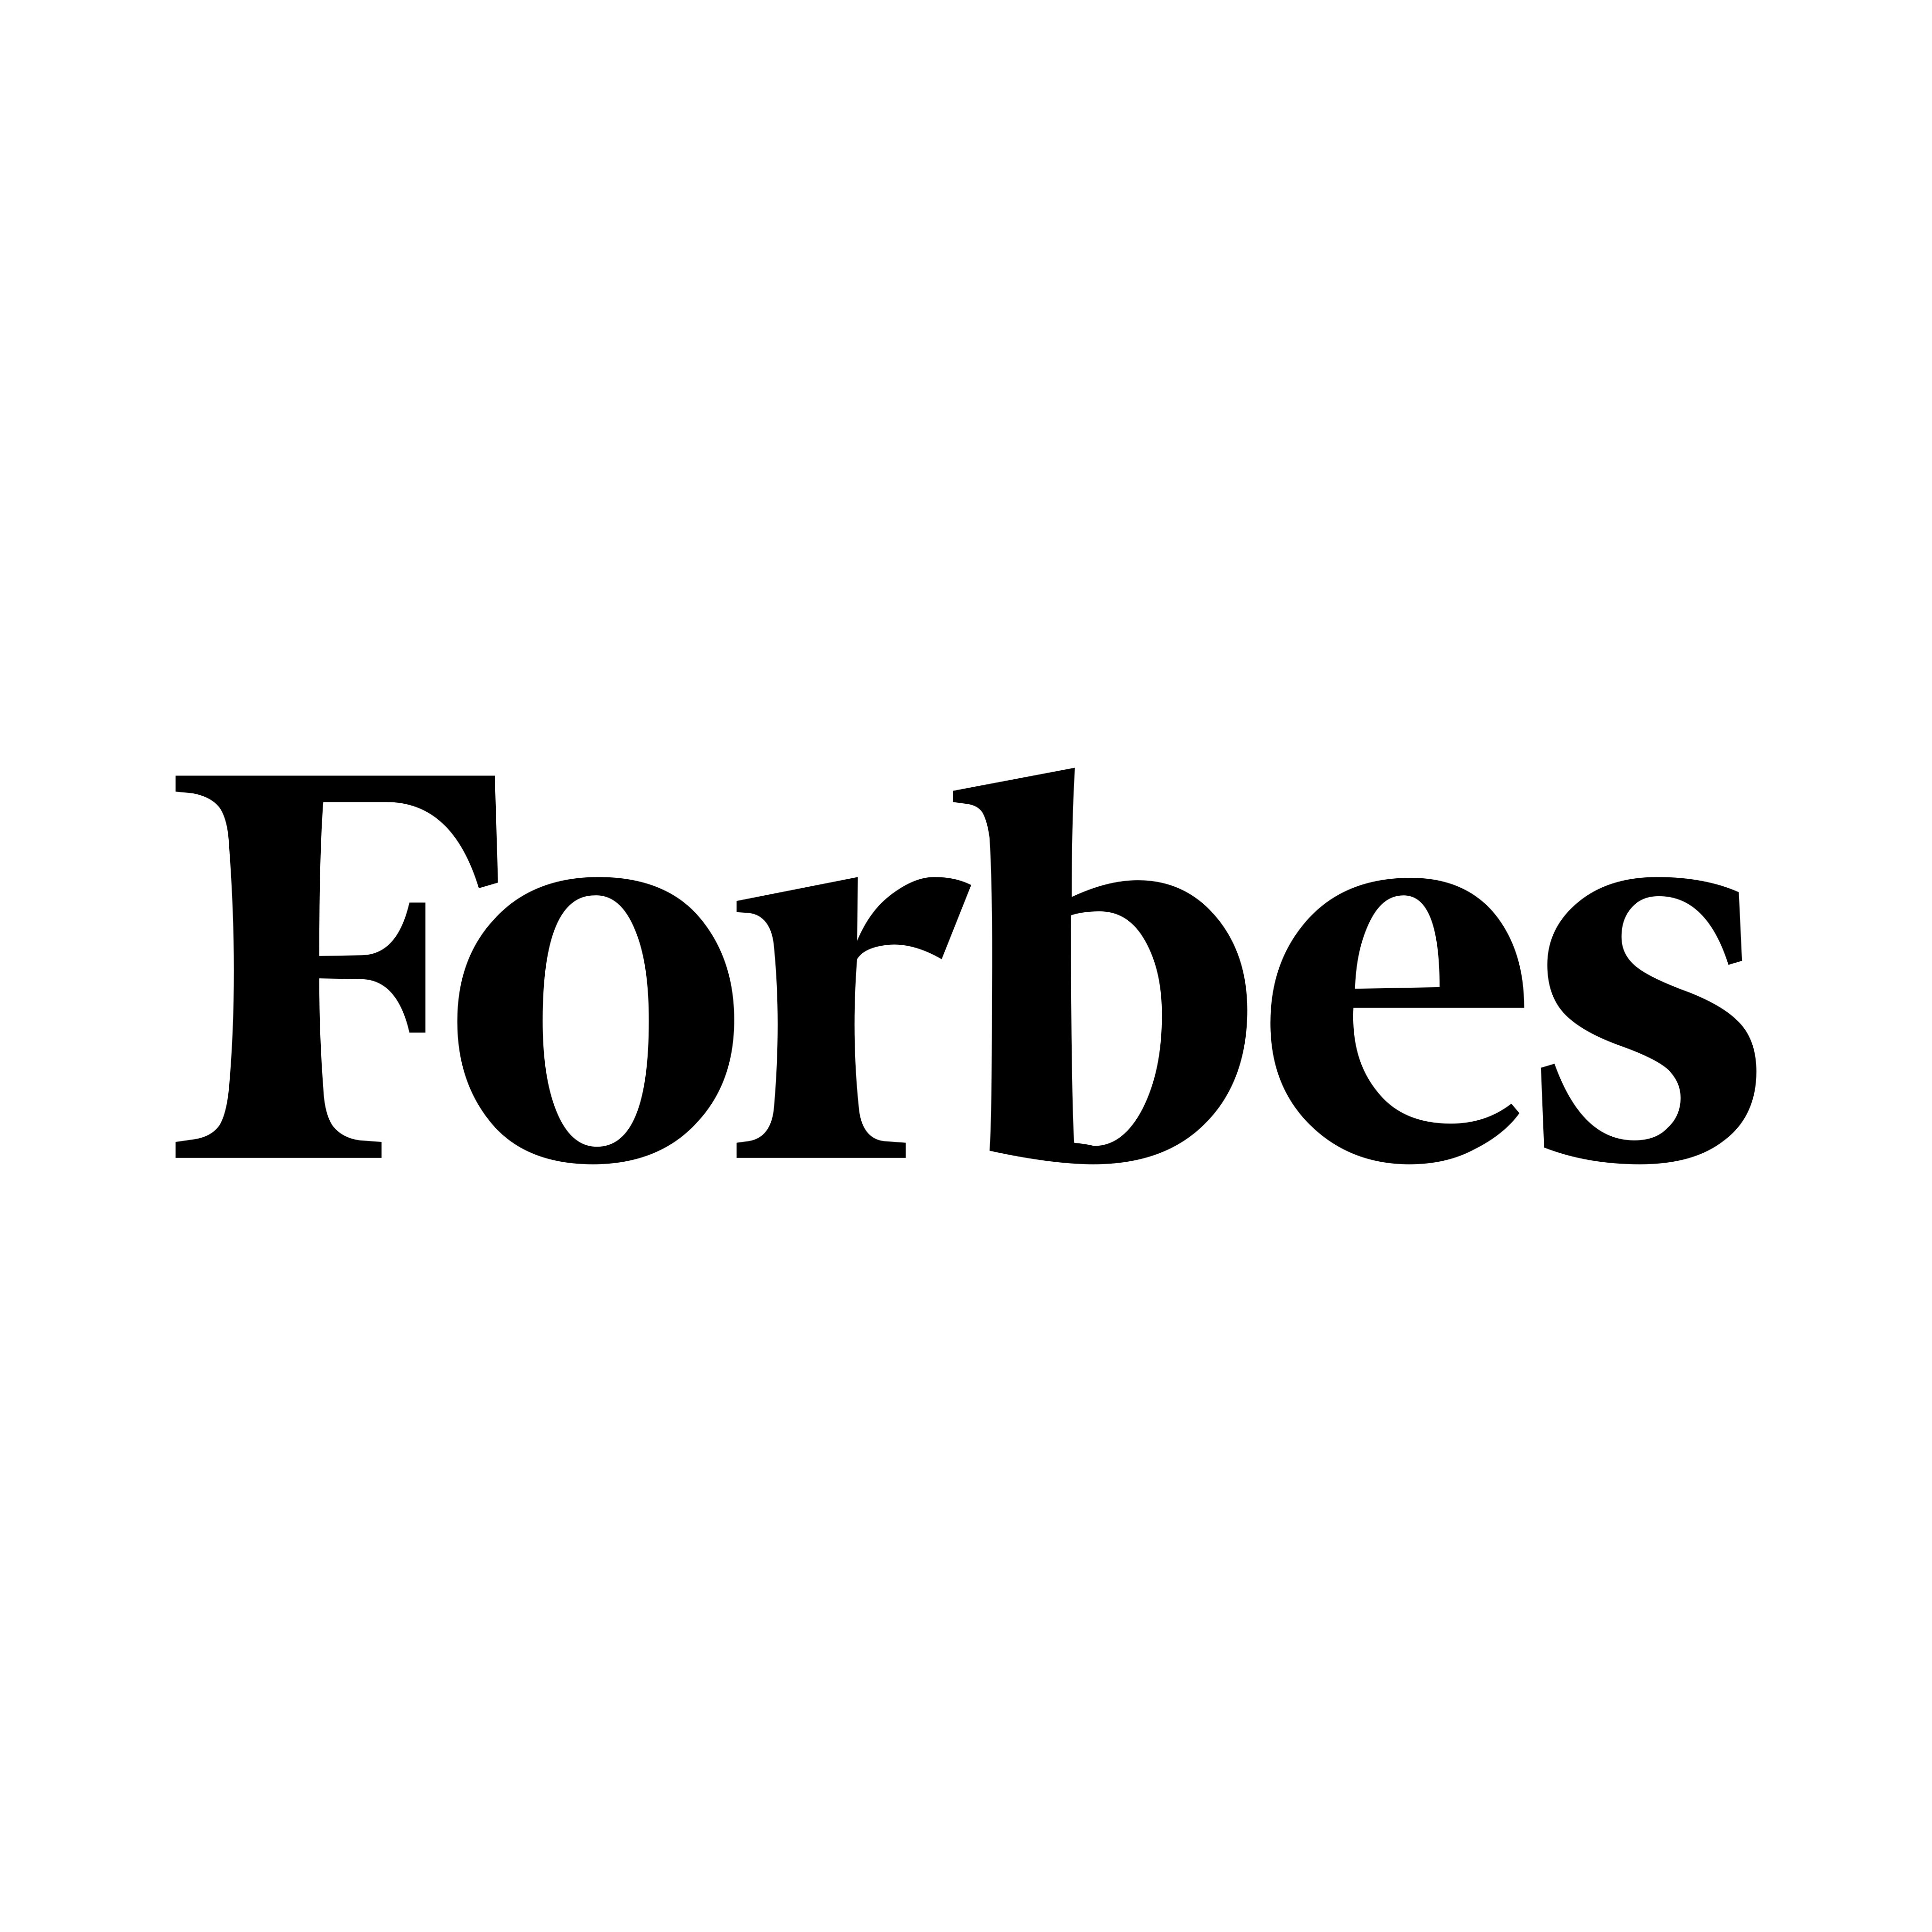 Logotipo Forbes - PNG e Vetor - Download do Logotipo